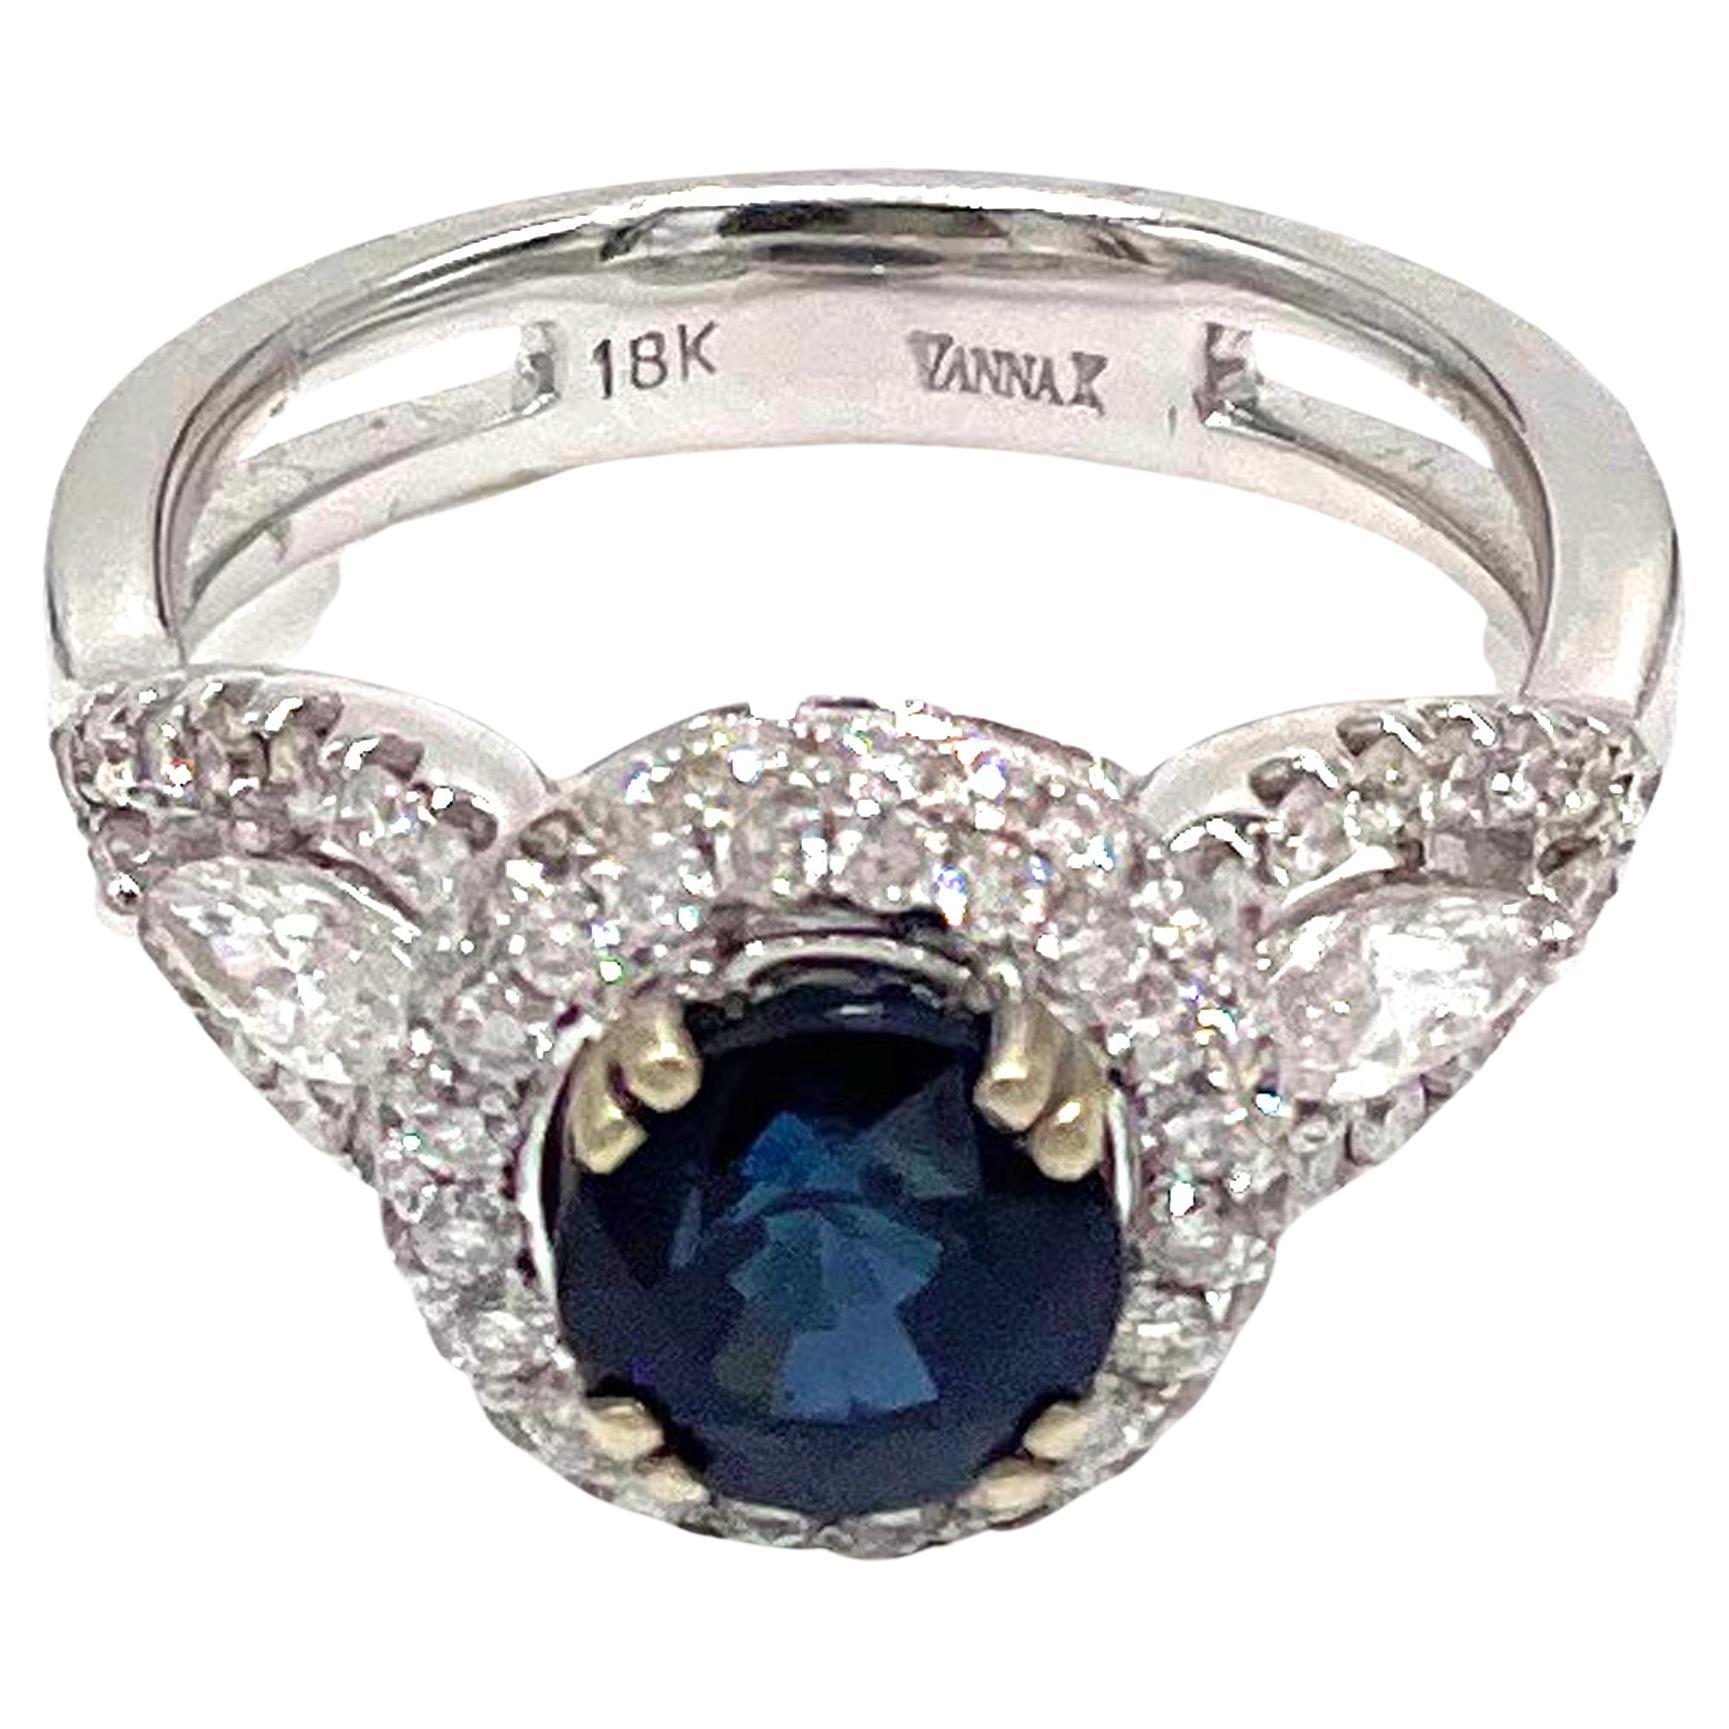 Vanna K. Ring aus 18 Karat Weißgold mit drei Steinen, zwei seitlichen Diamanten im Marquis-Schliff und runden Diamanten mit einem Gesamtgewicht von 1,12 Karat. Ein zentraler runder blauer Saphir von 2,00 Karat.

* Fingergröße 6.5
* Stil-Nr.